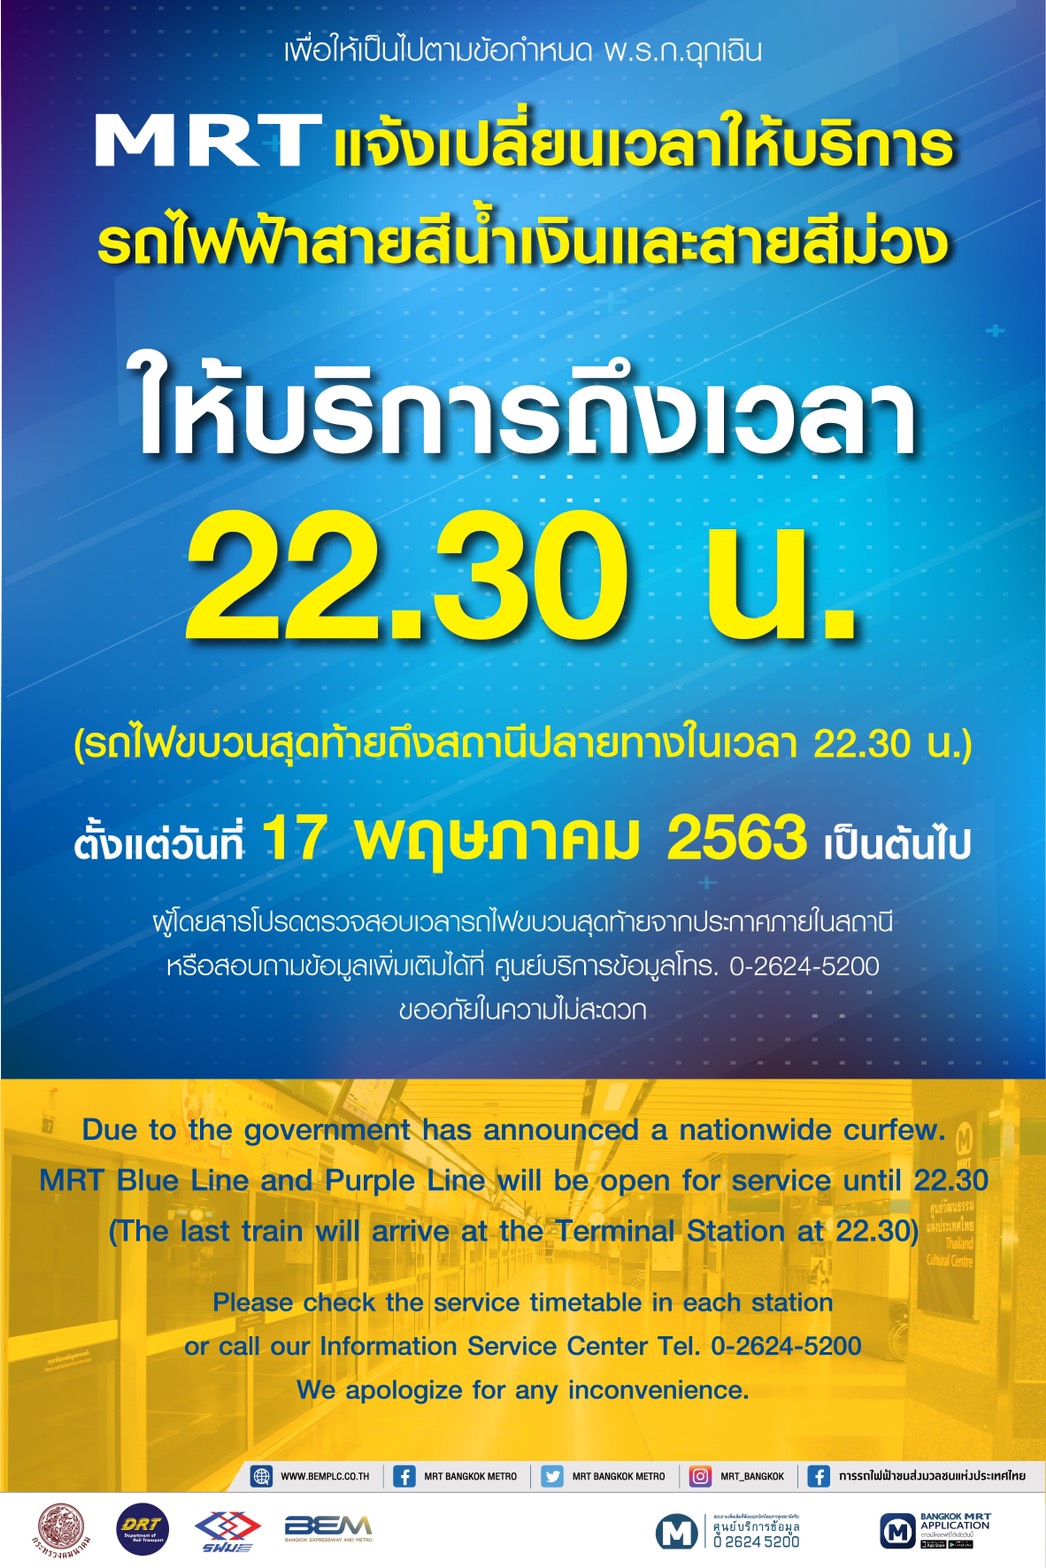 MRT ปรับเวลาปิดให้บริการ เป็นเวลา 22.30 น. ตั้งแต่วันที่ 17 พฤษภาคม 2563 เป็นต้นไป